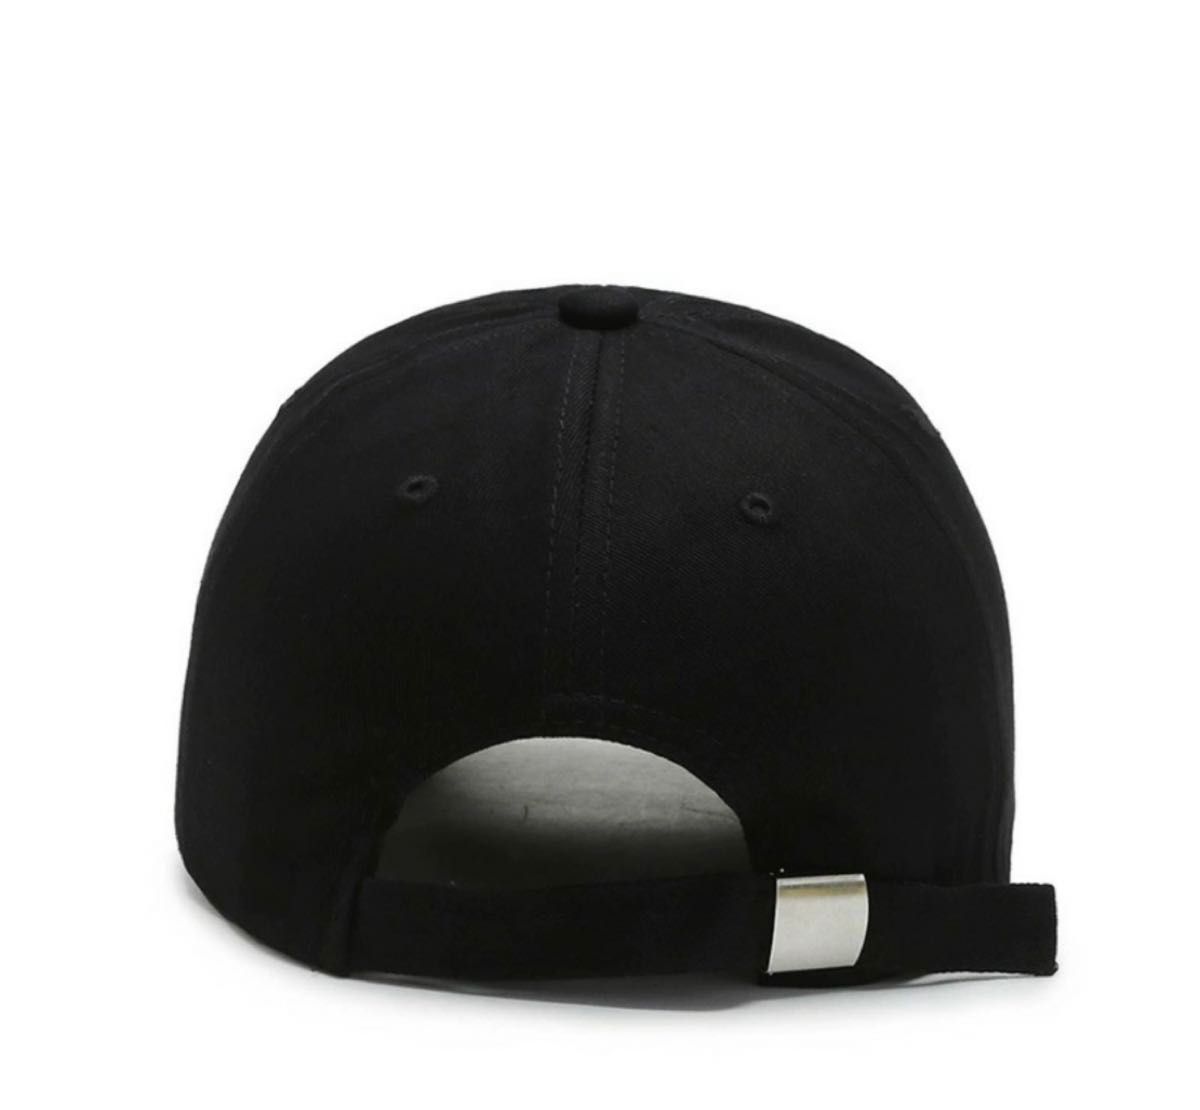 メンズ レディース キャップ 帽子 韓国 ロゴ つばブラック 黒 英字